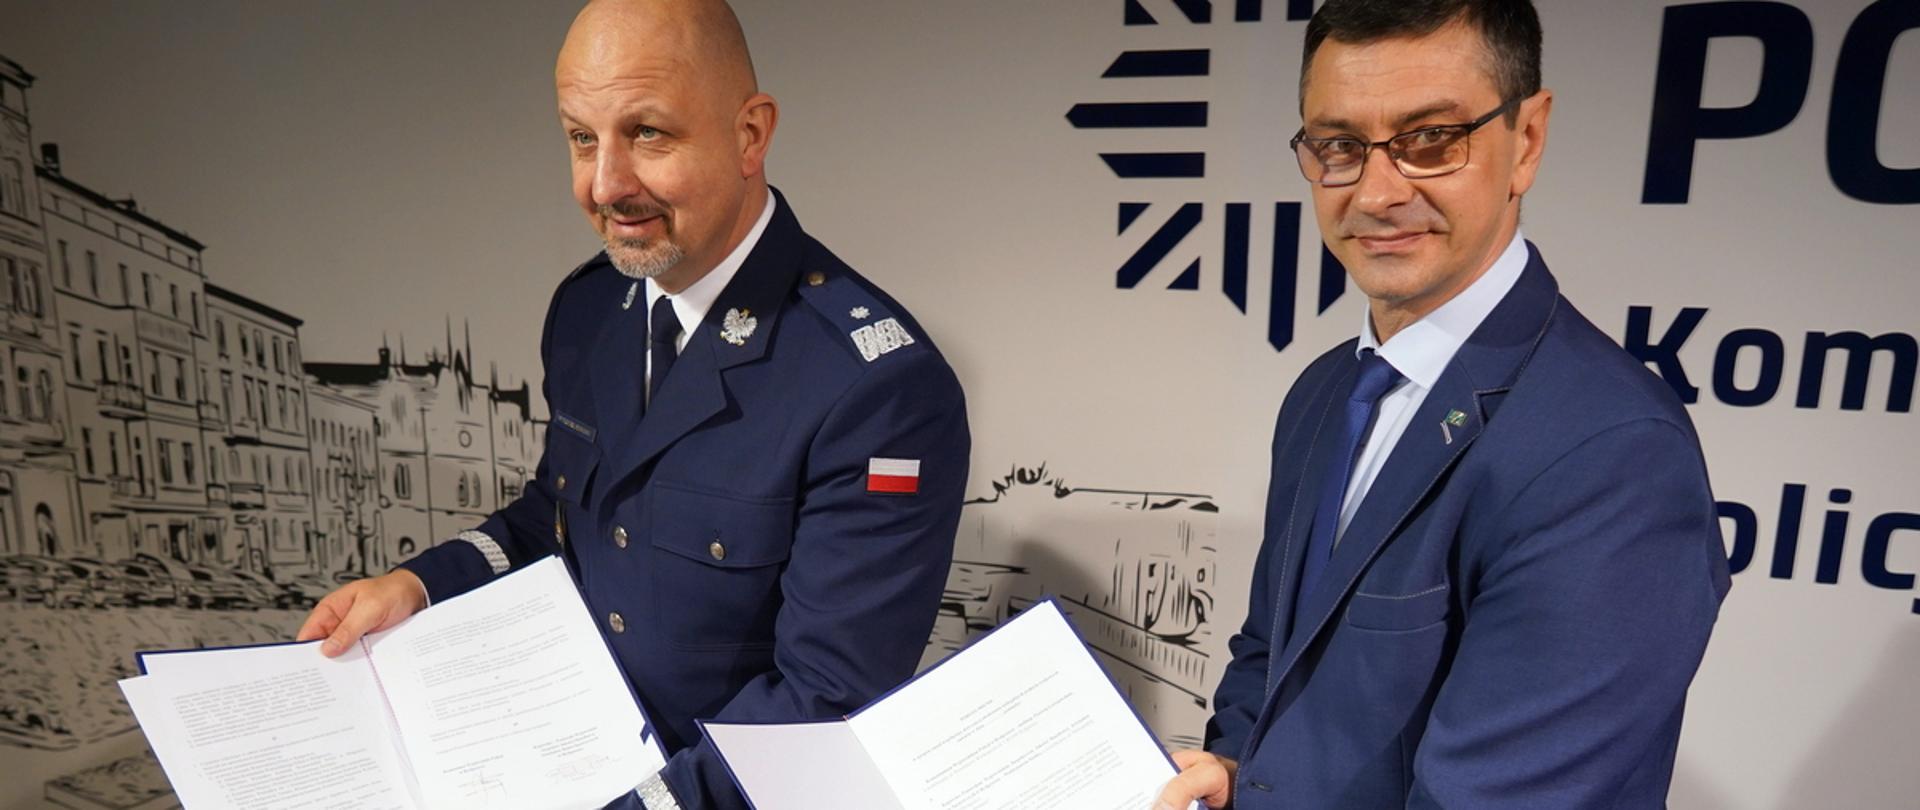 Na zdjęciu Komendant Policji i Kujawsko-Pomorski Wojewódzki Inspektor JHARS prezentują podpisane porozumienie